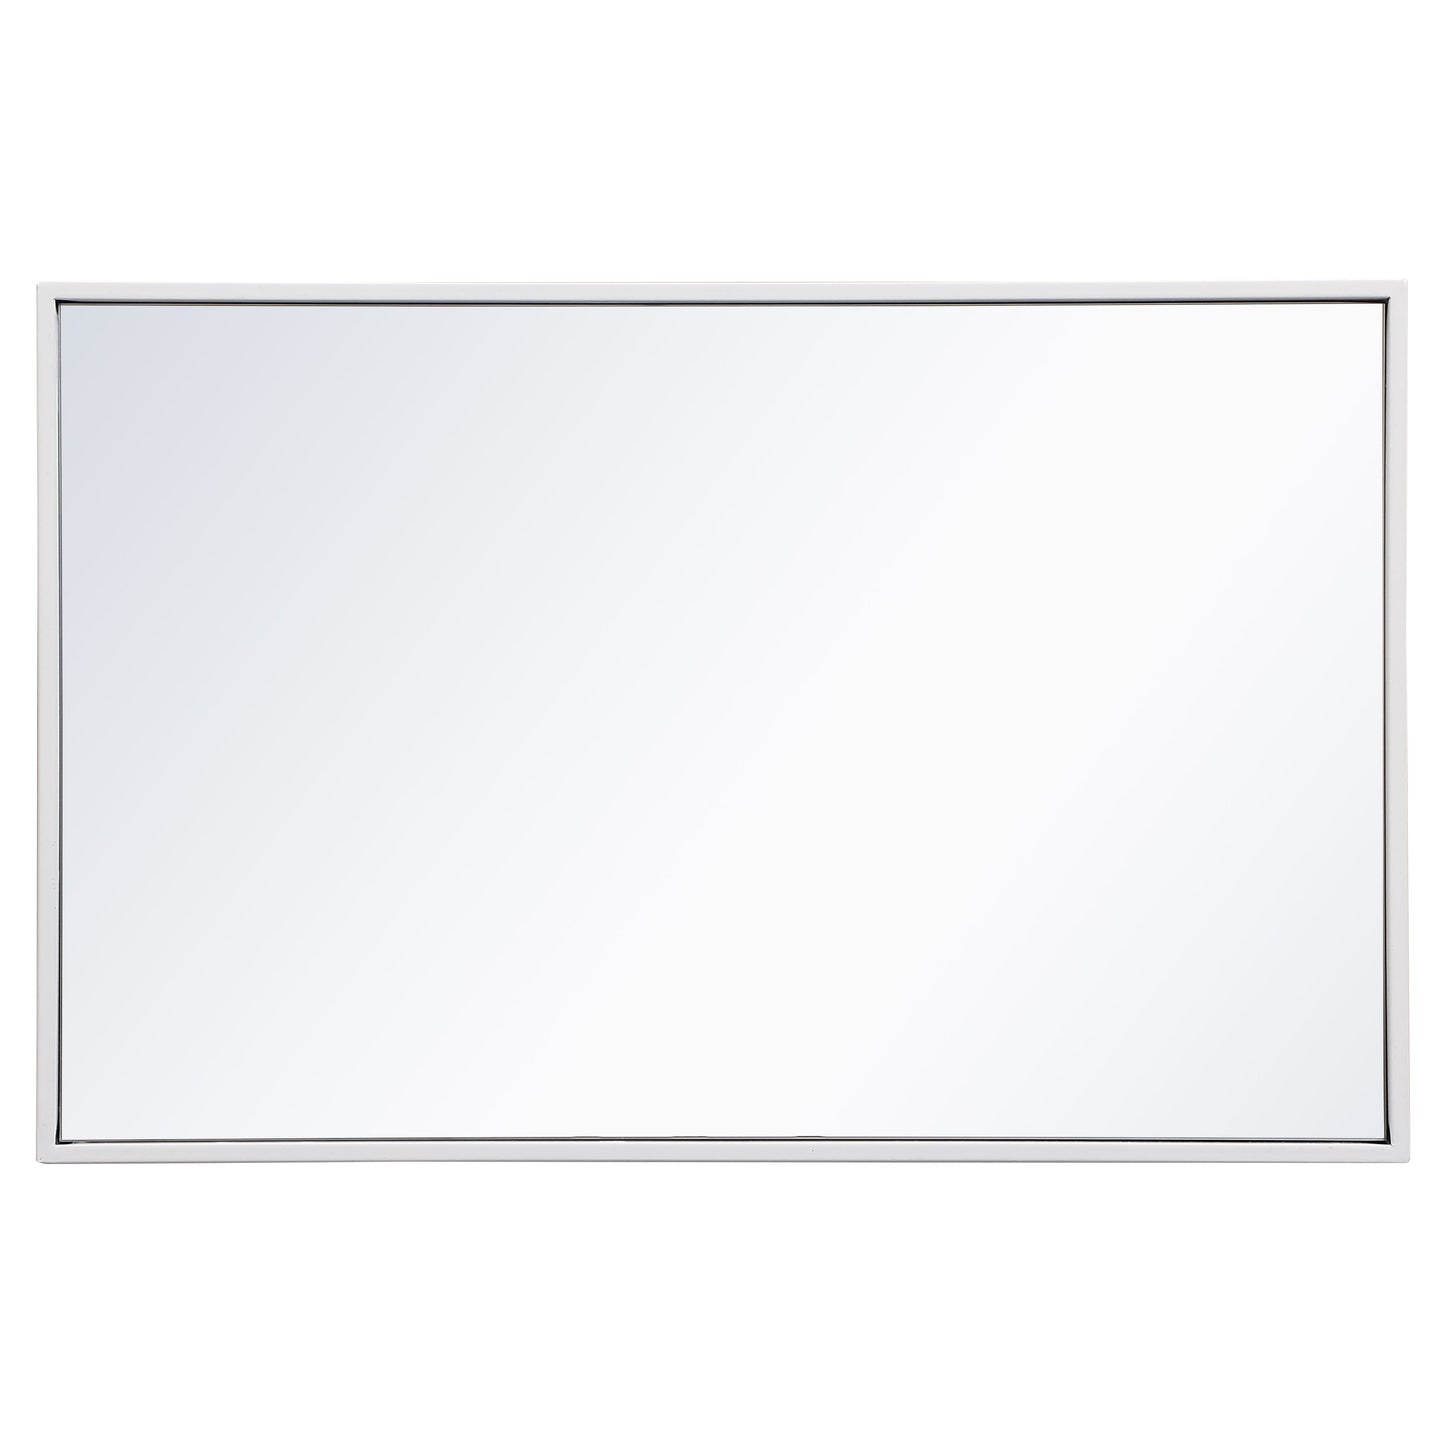 MR41828WH Monet 28" x 18" Metal Framed Rectangular Mirror in White